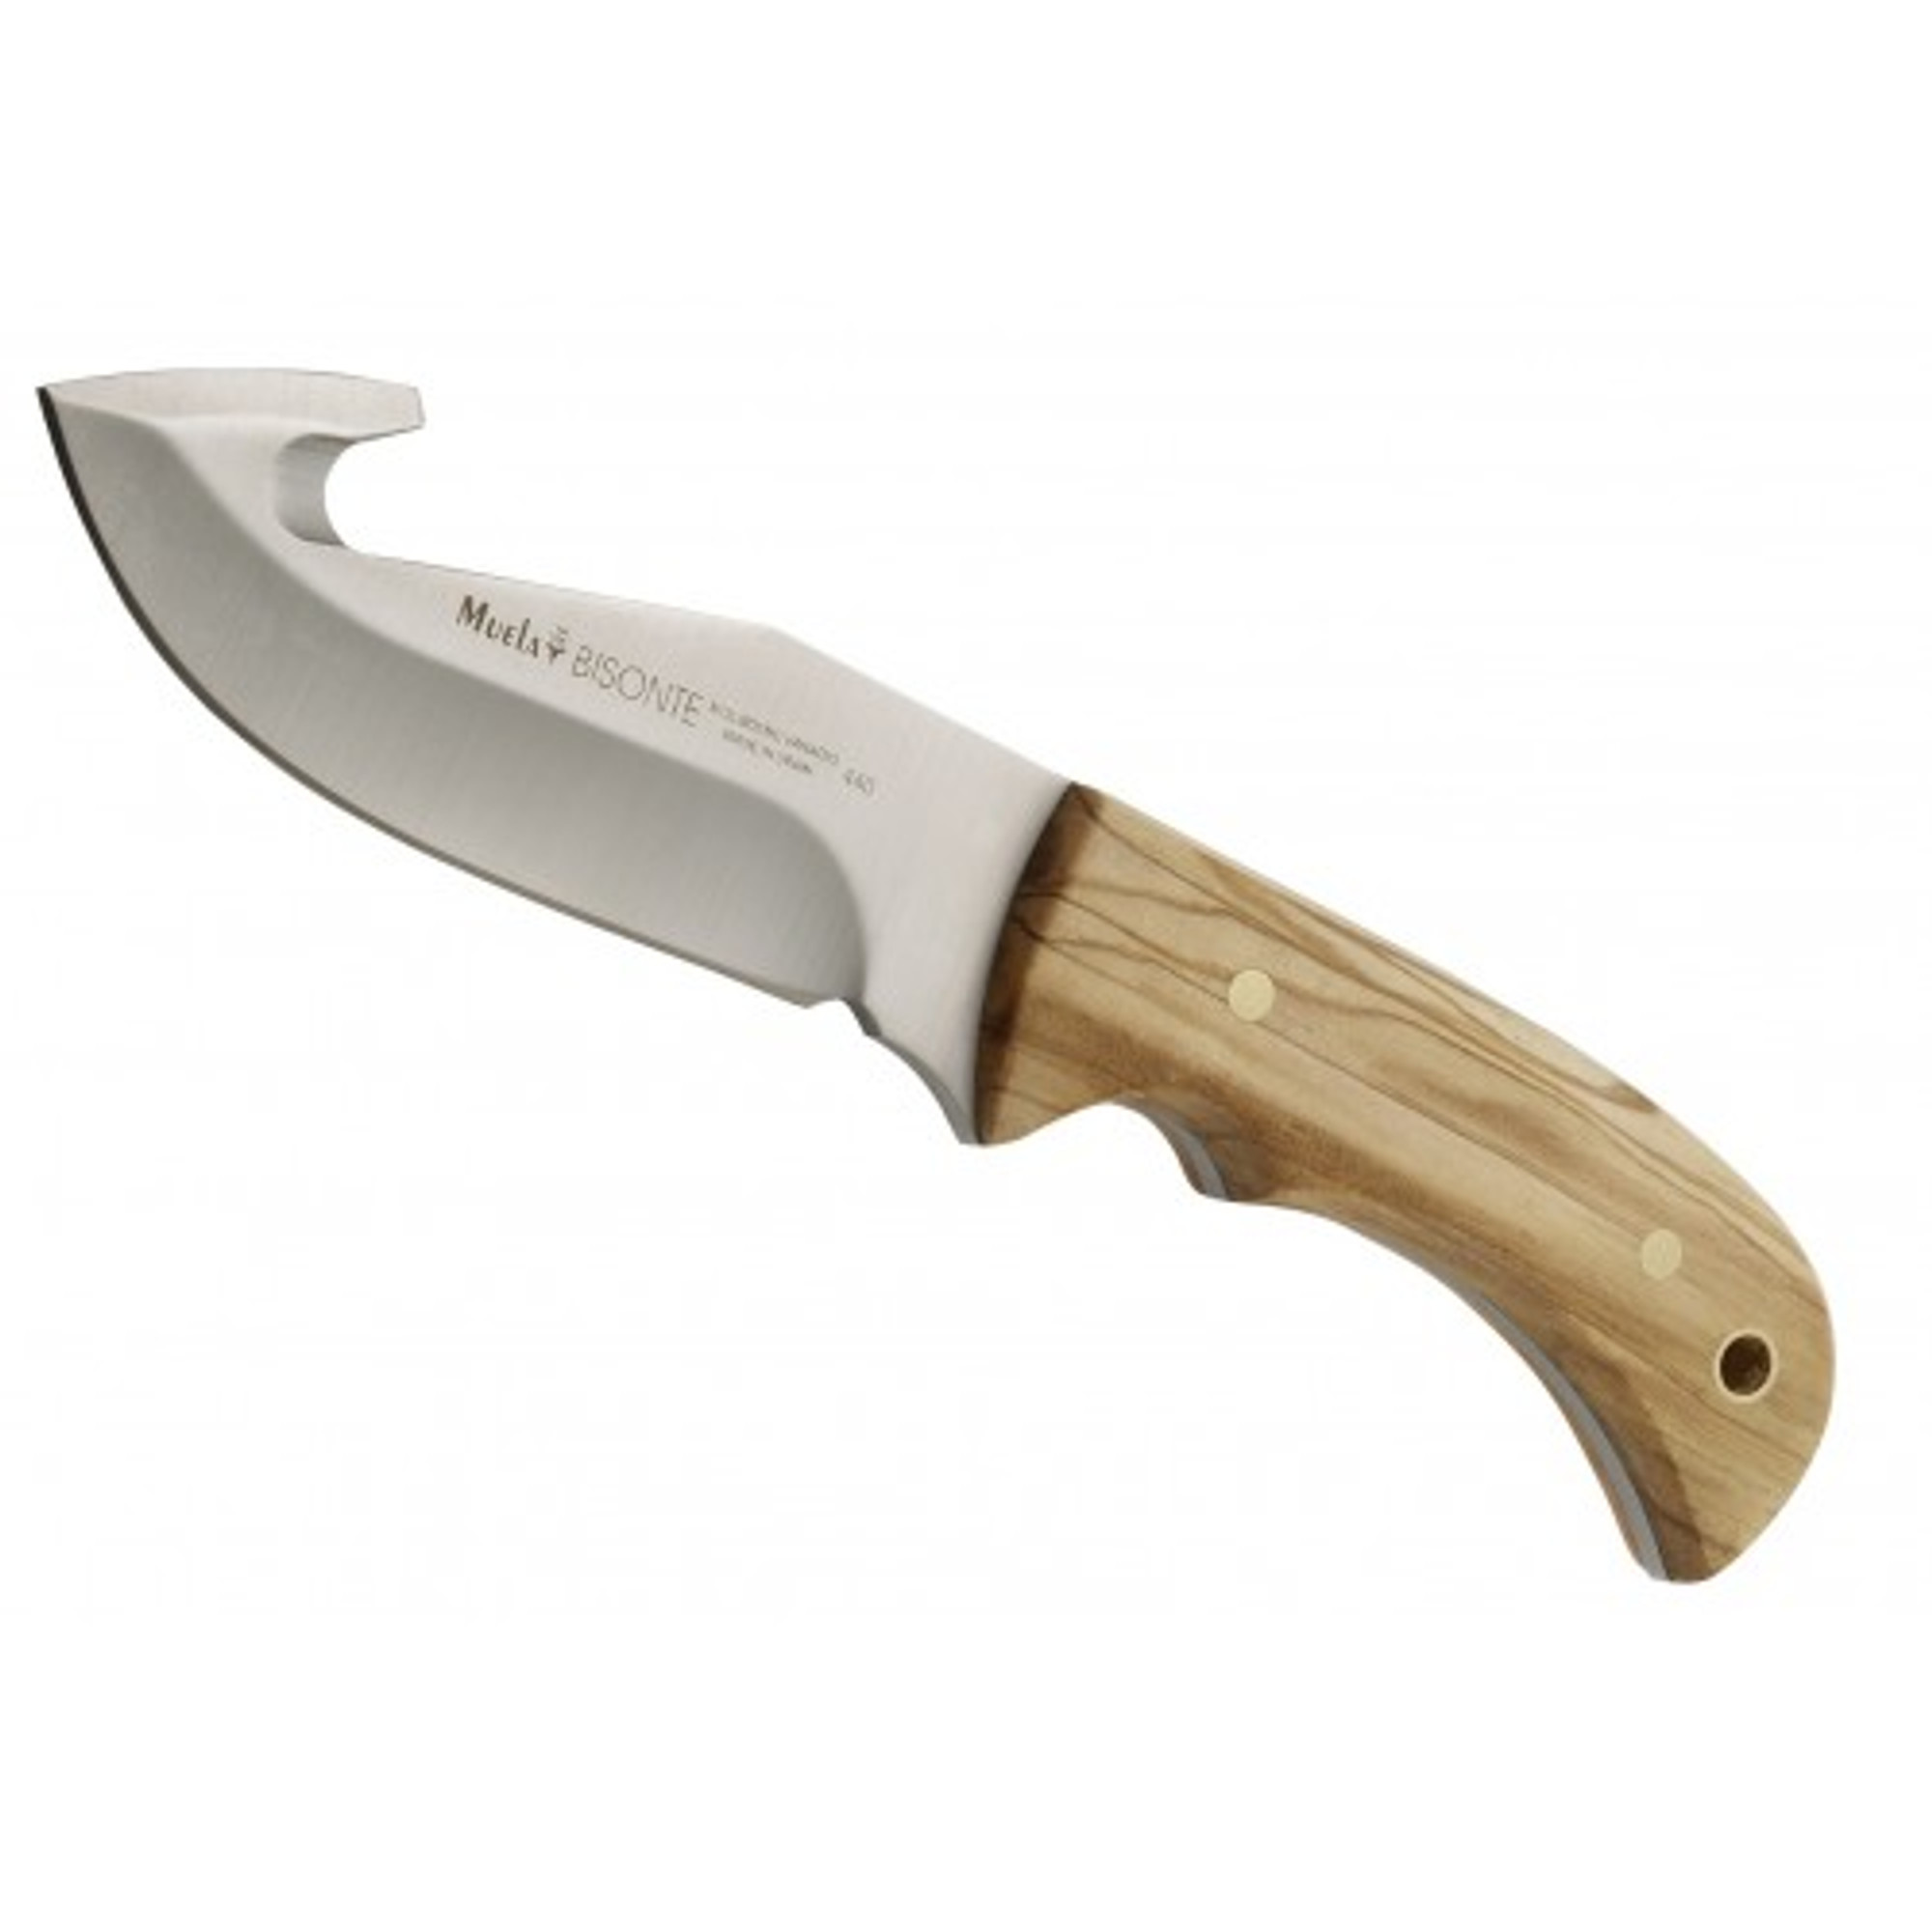 MUELA BISONTE-11OL, X50CrMoV15, 4-1/2" Fixed Blade Hunting Knife, Olivewood Handle